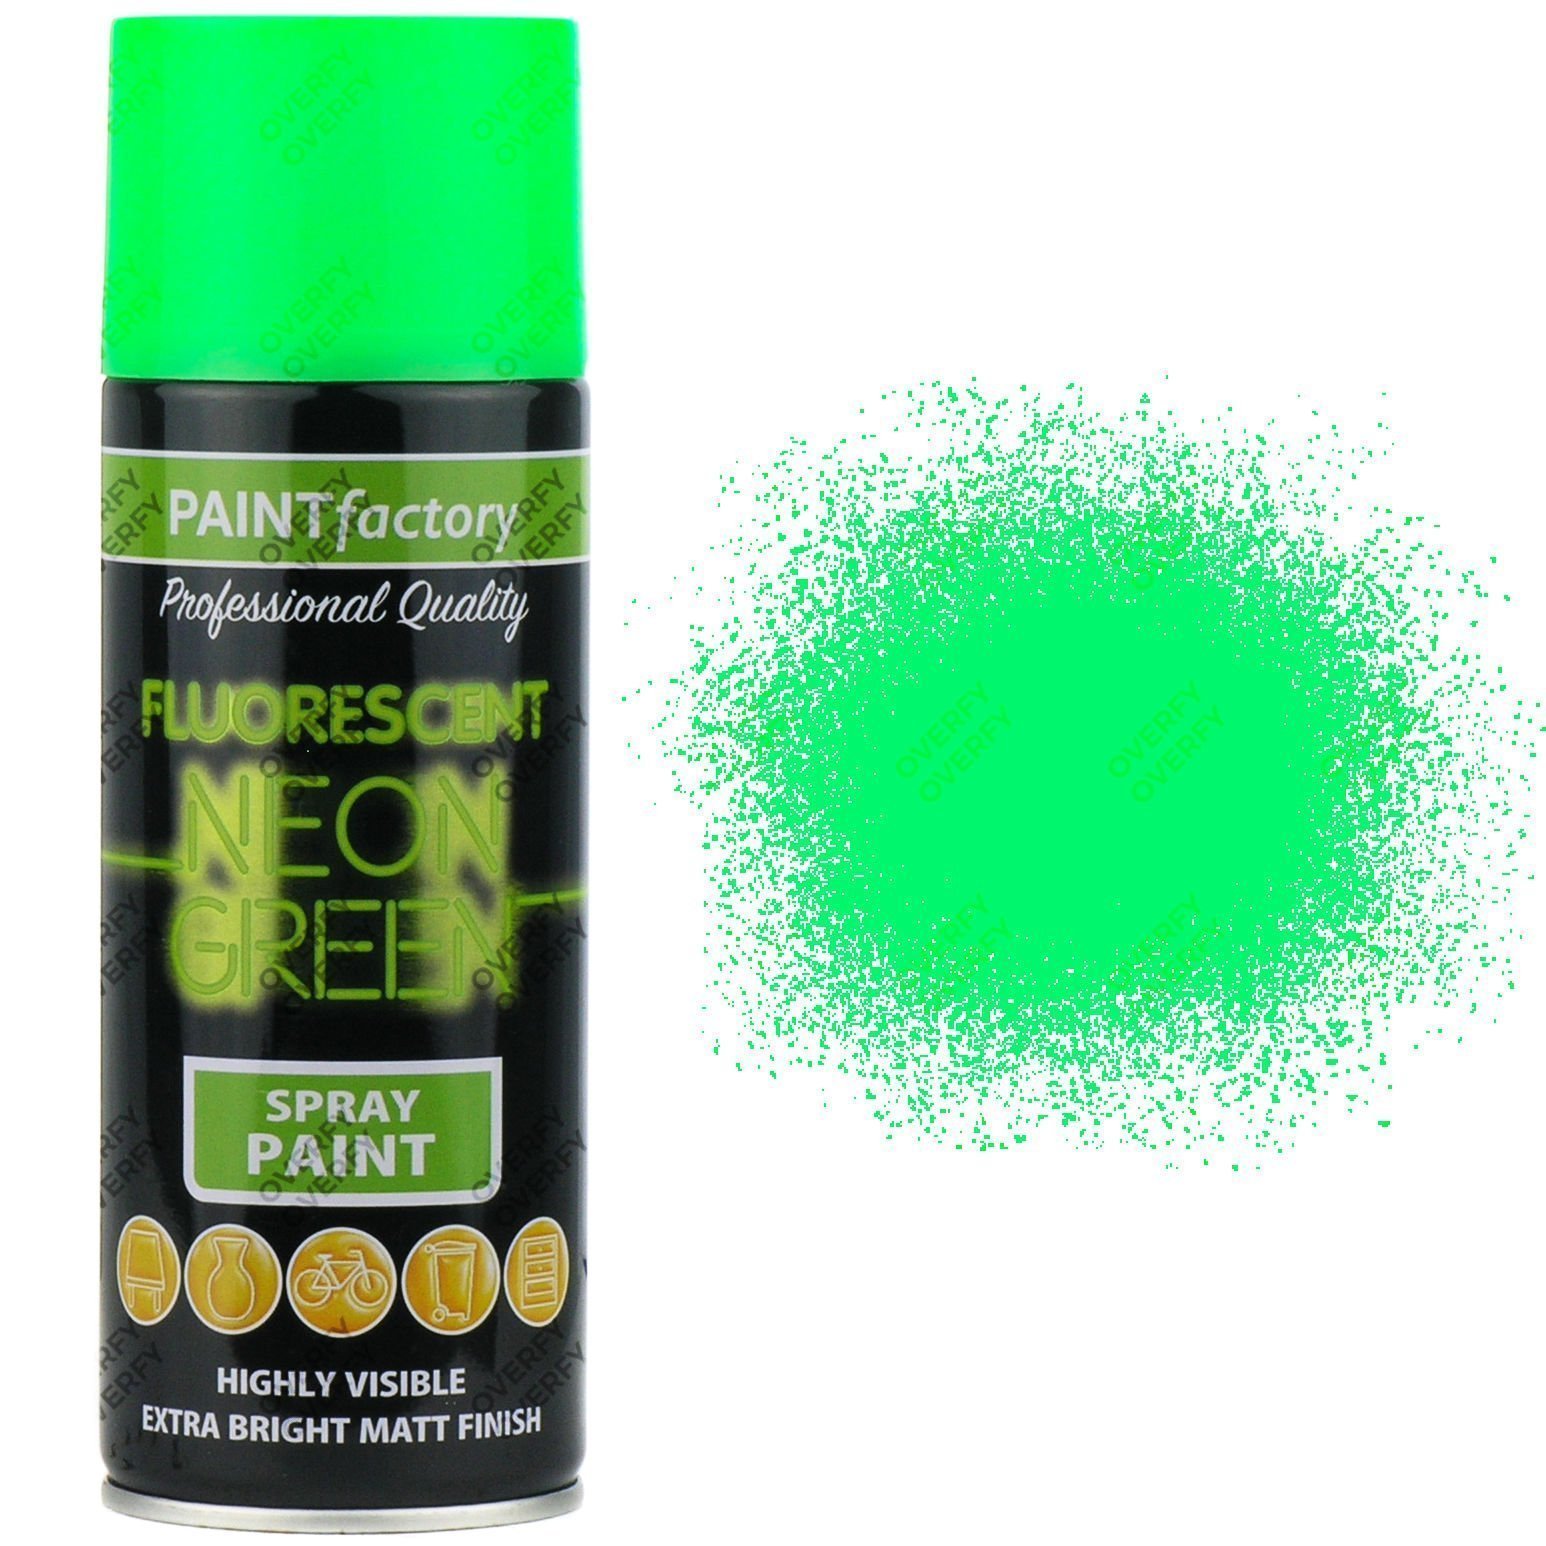 Loop Colors Spray Paint - Neon Green, LP500, 400 ml